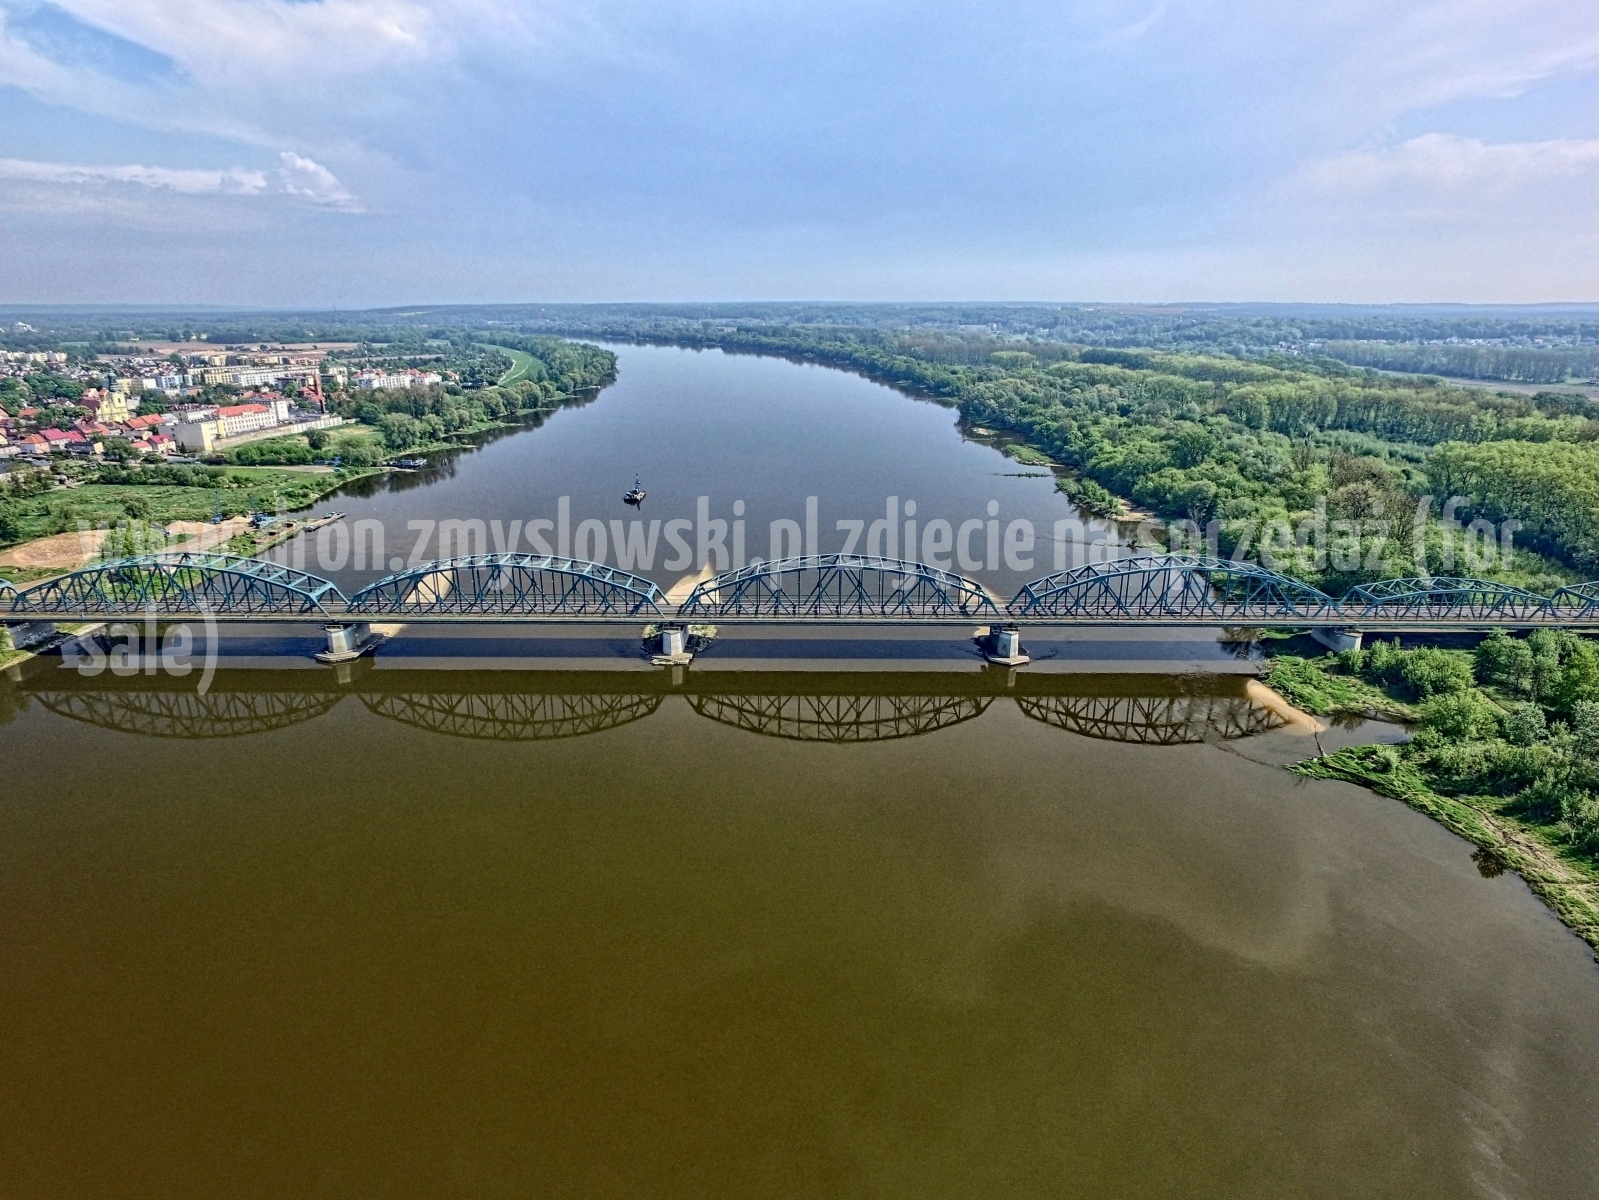 2018-05-03-lot-dronem-w-Bydgoszczy-przy-moscie-na-Wisle_002_HDR_wyprostowany_horyzont